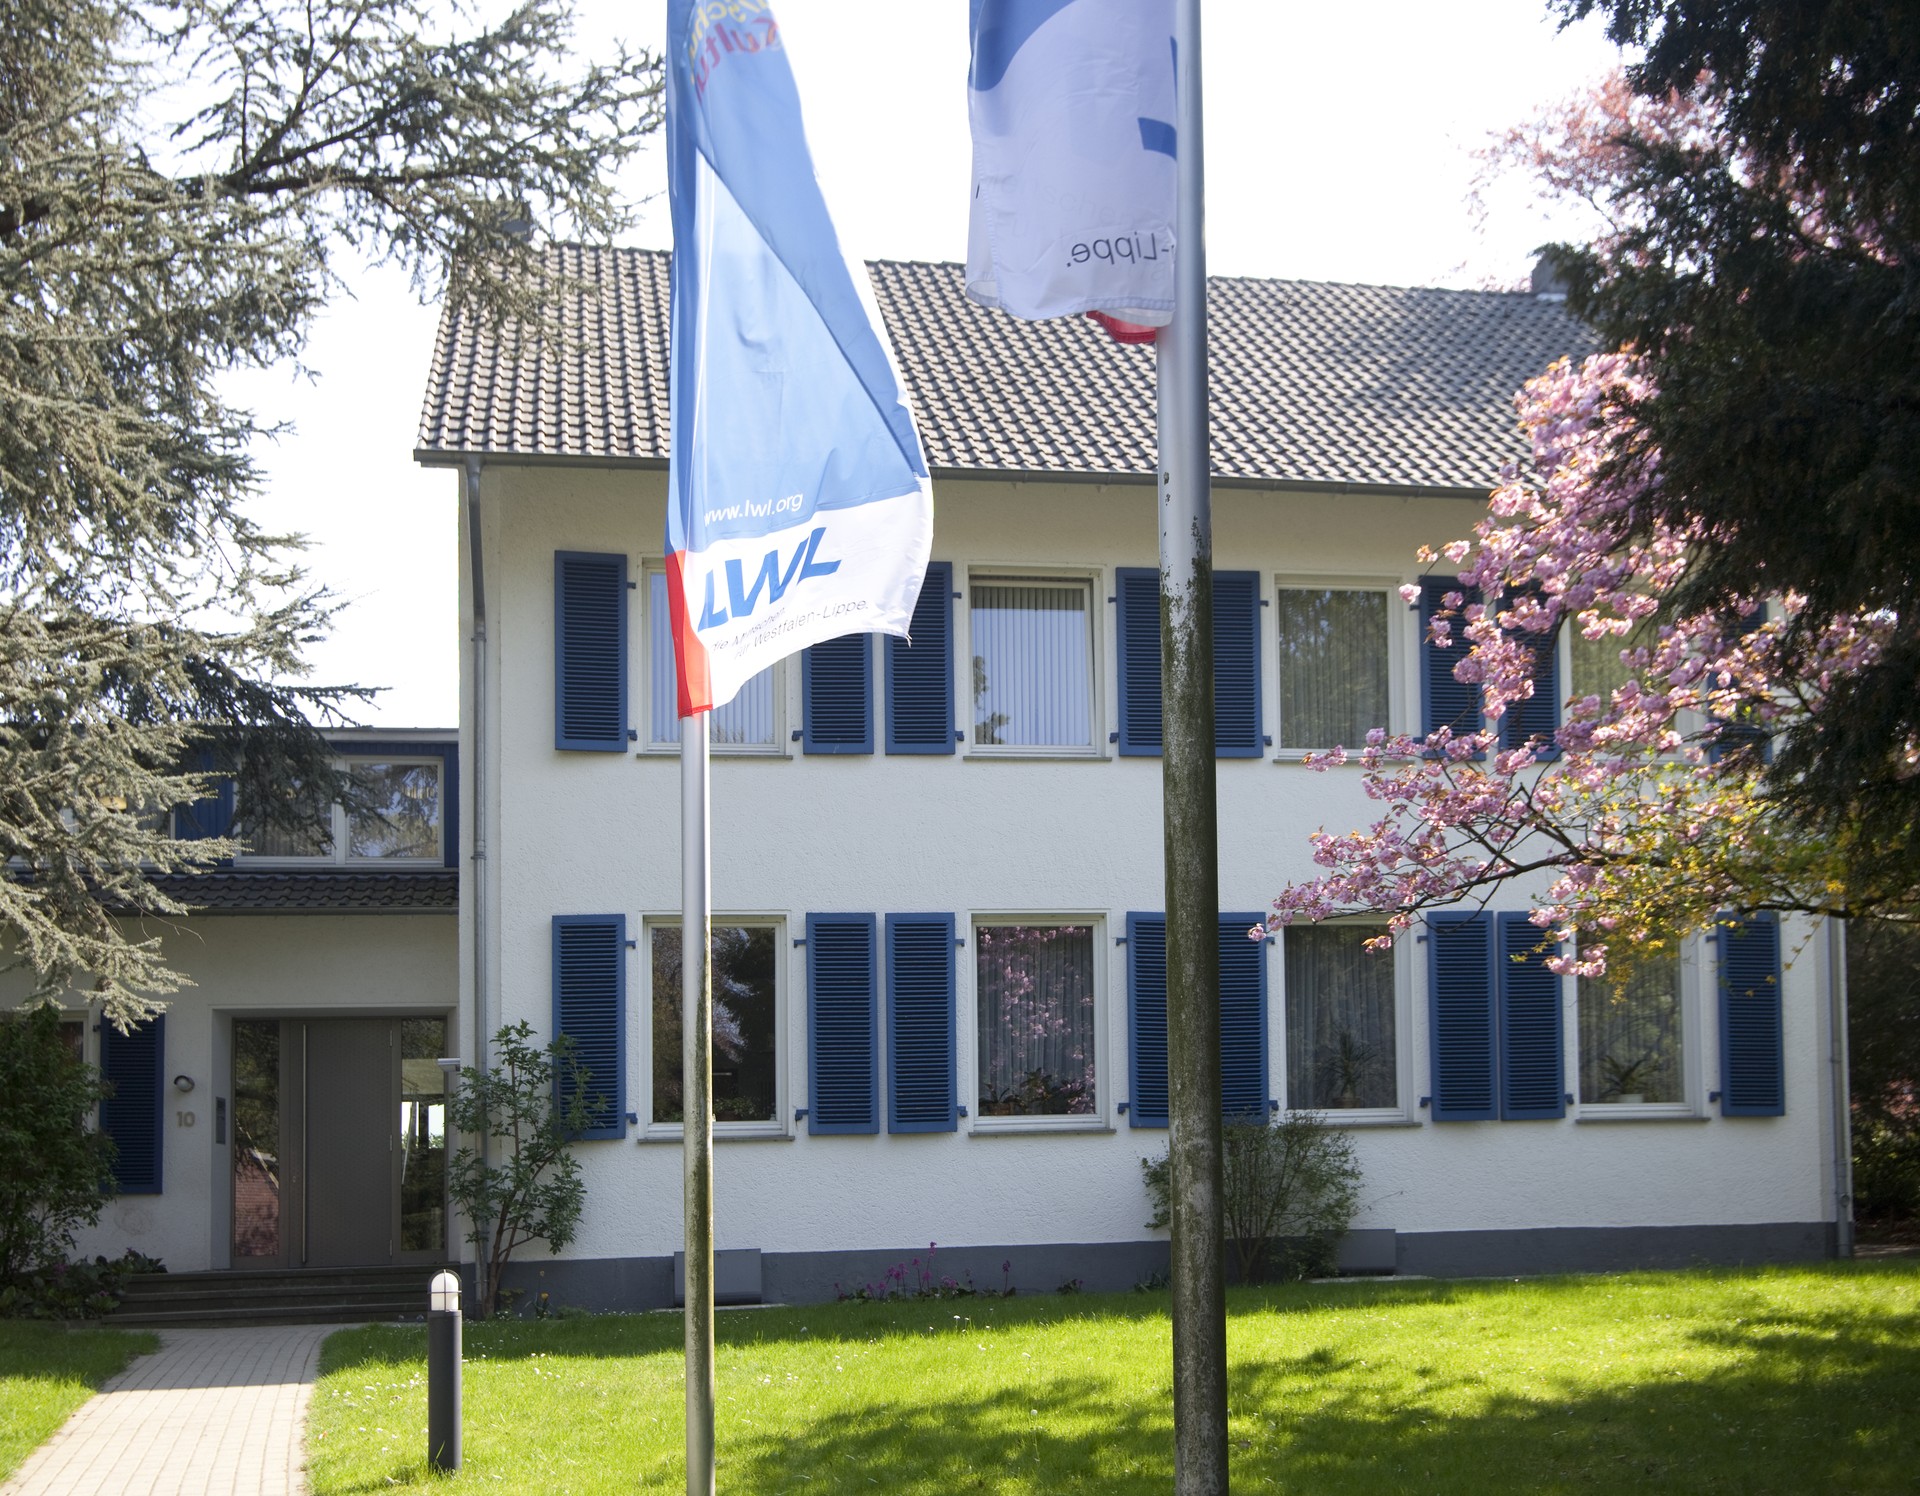 Ein weißes, zweistöckiges Gebäude mit blauen Fensterflügeln, davor auf einem Rasen zwei Flaggenmasten mit blau,weiß, roten LWL-Flaggen